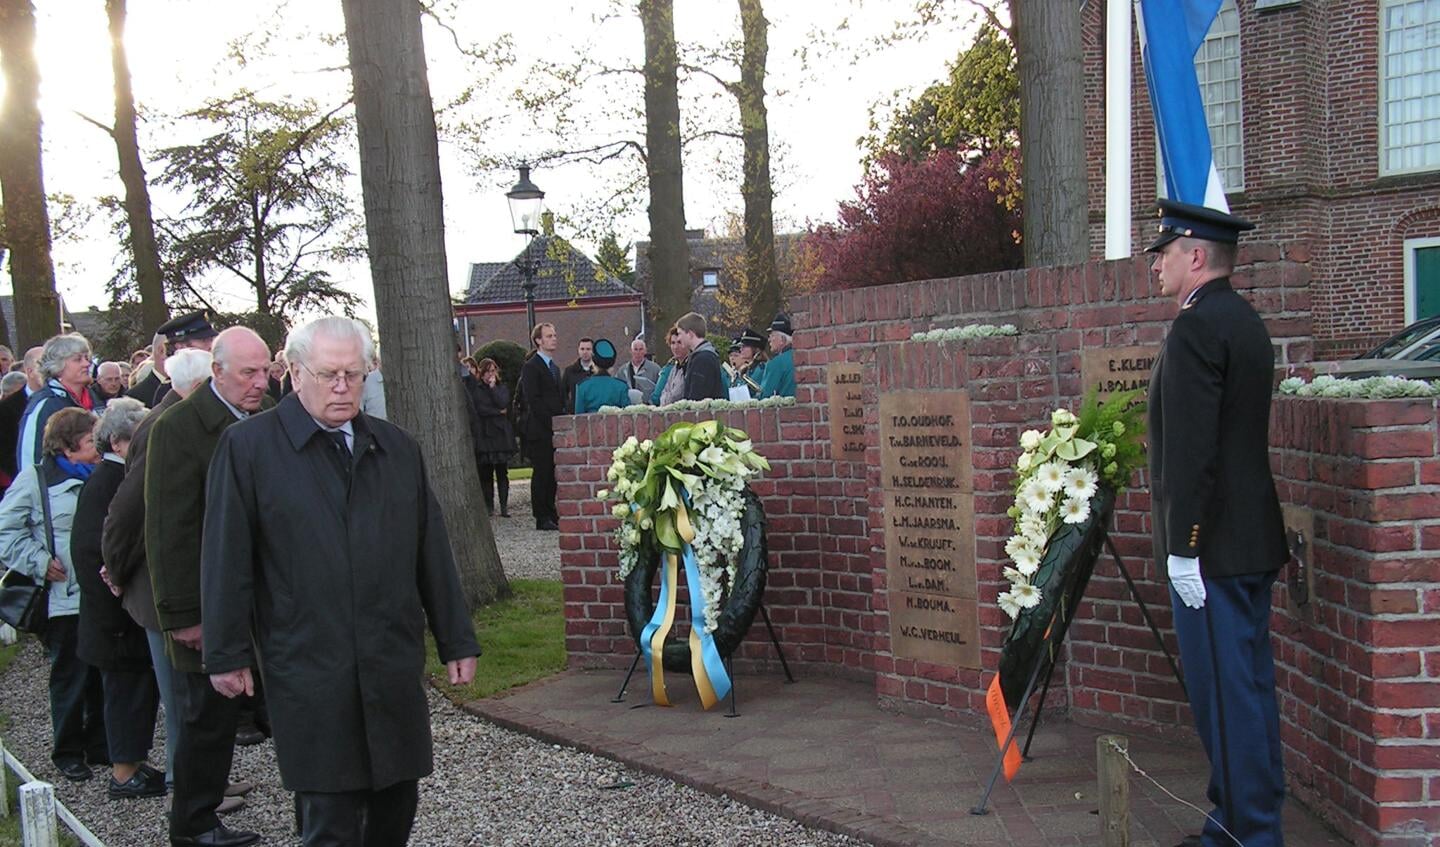 Gerard de Wit behoorde in 2010 tot de deelnemers aan de herdenking in Westbroek, die daar langs het monument trekken. 